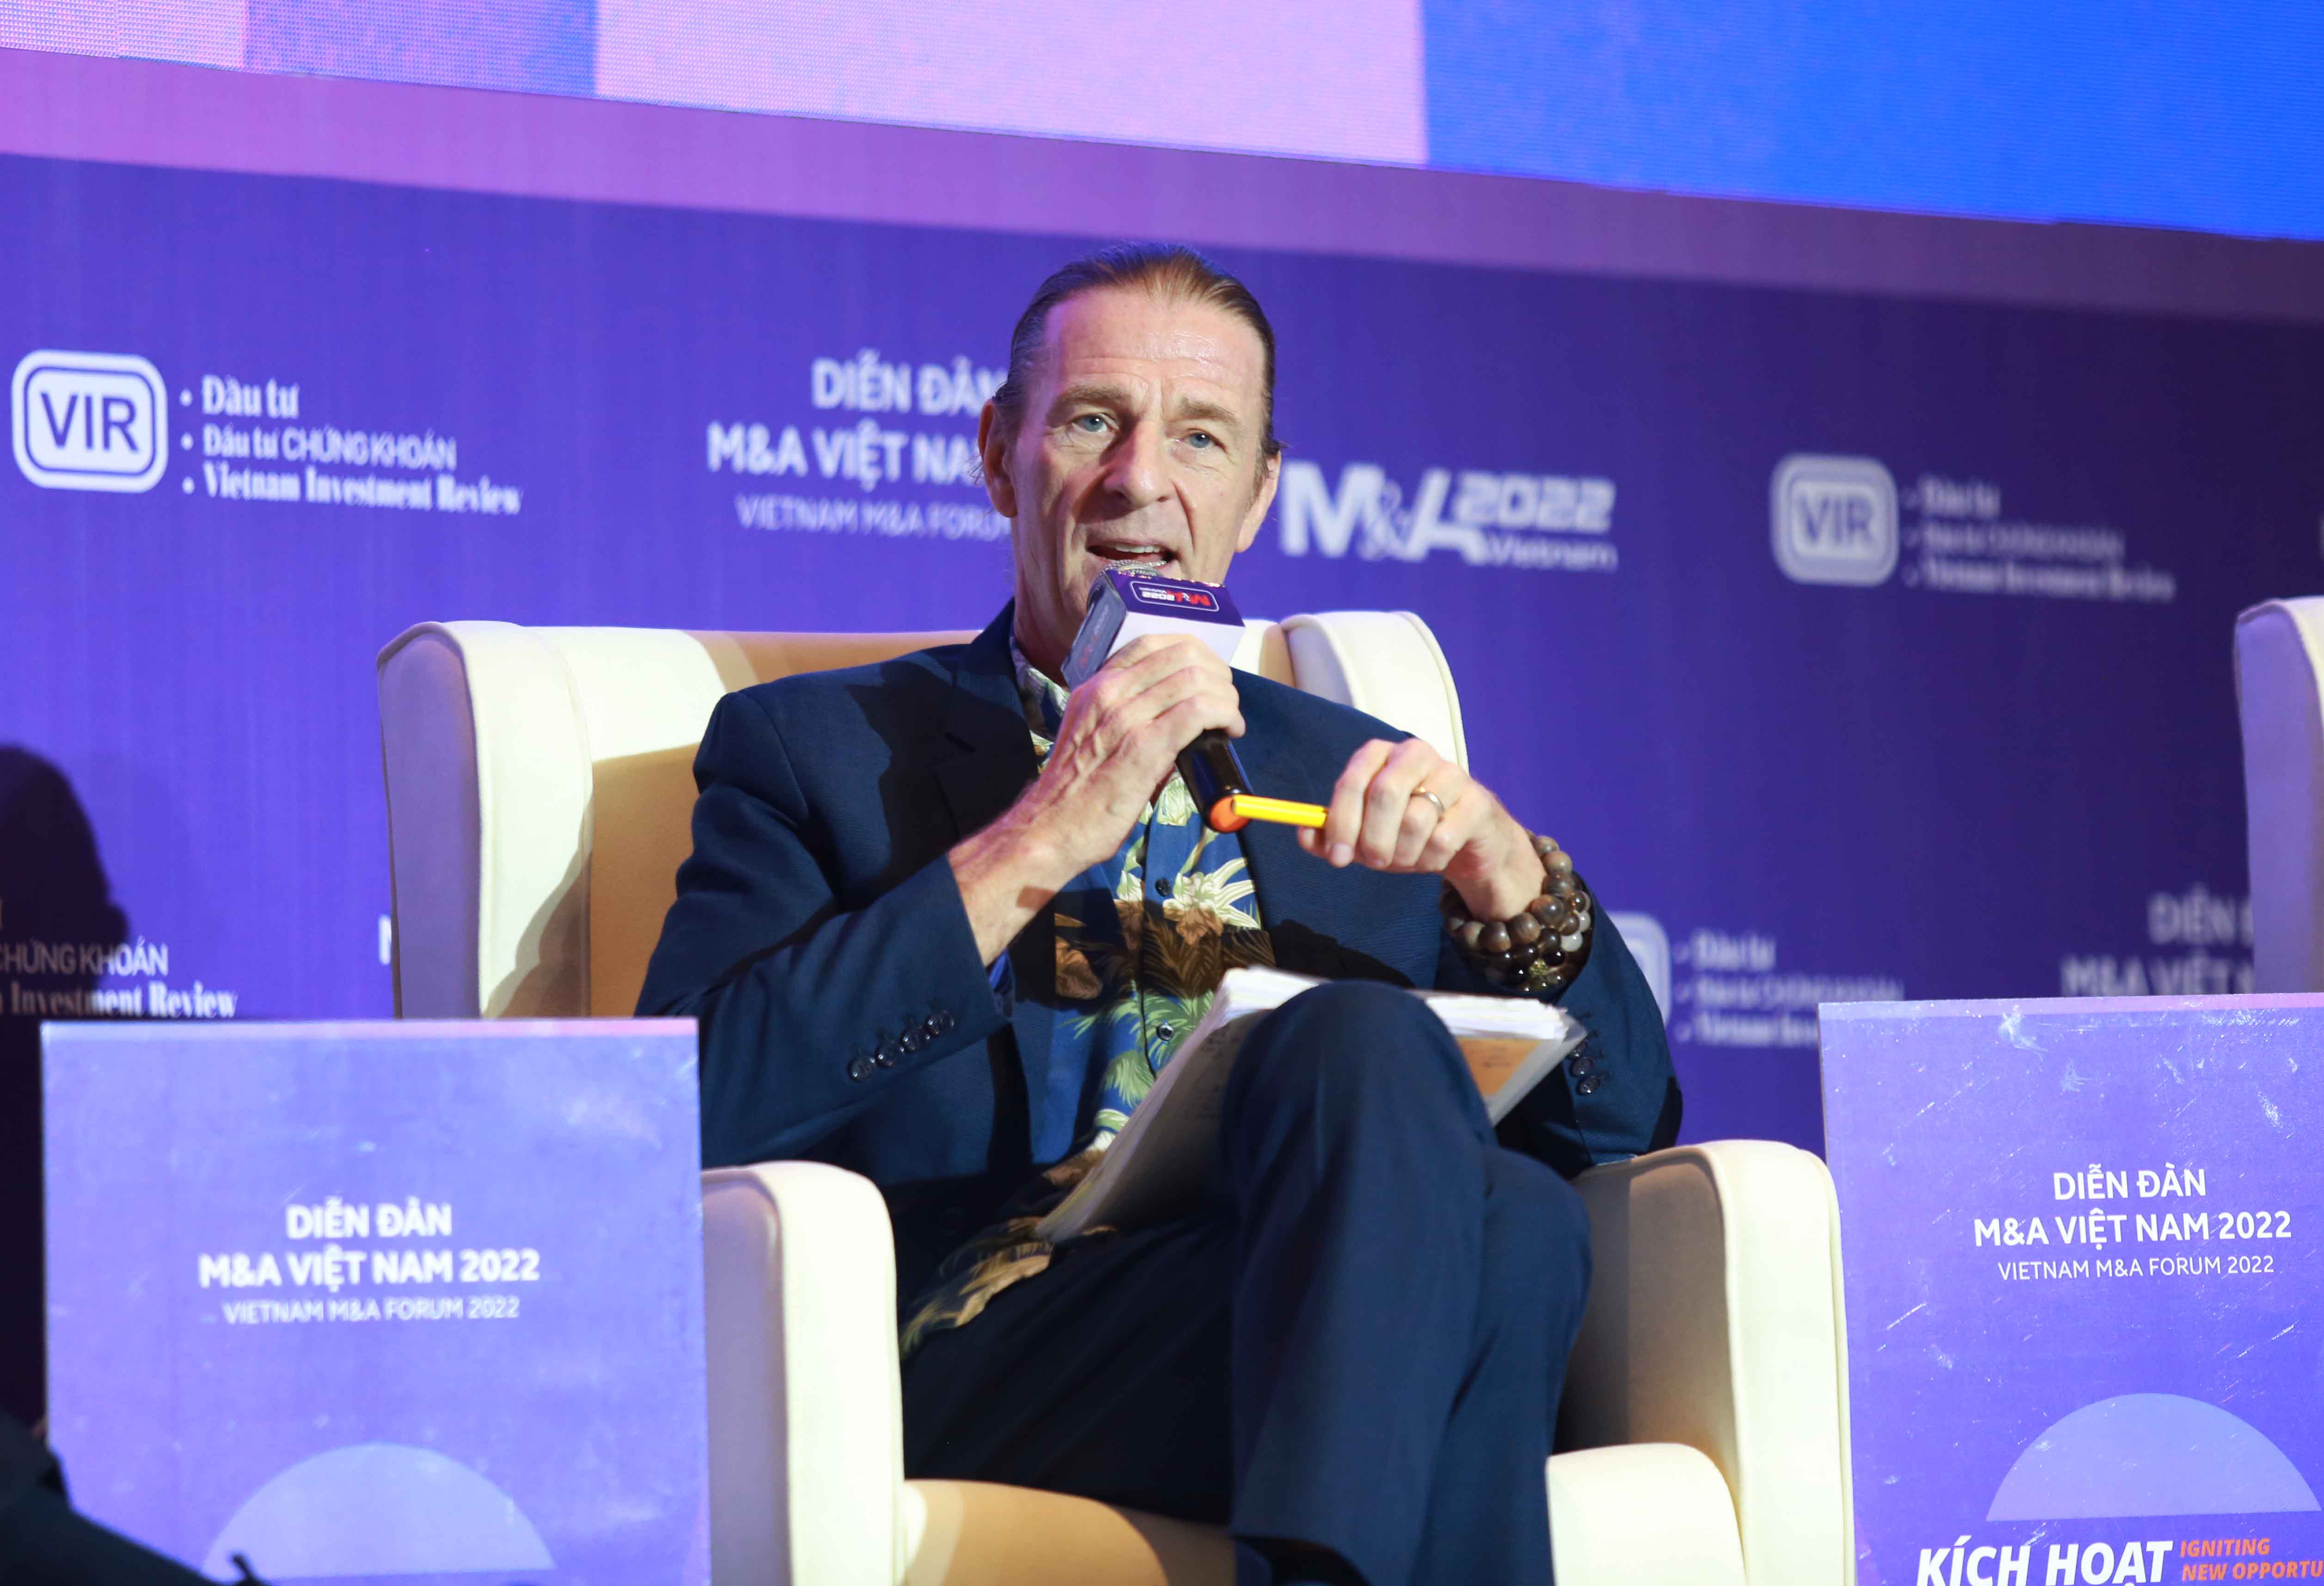 Ông Dominic Scriven, Chủ tịch Hội đồng quản trị Dragon Capital tại Diễn đàn M&A Việt Nam 2022 - Kích hoạt những cơ hội mới. Ảnh: Lê Toàn.